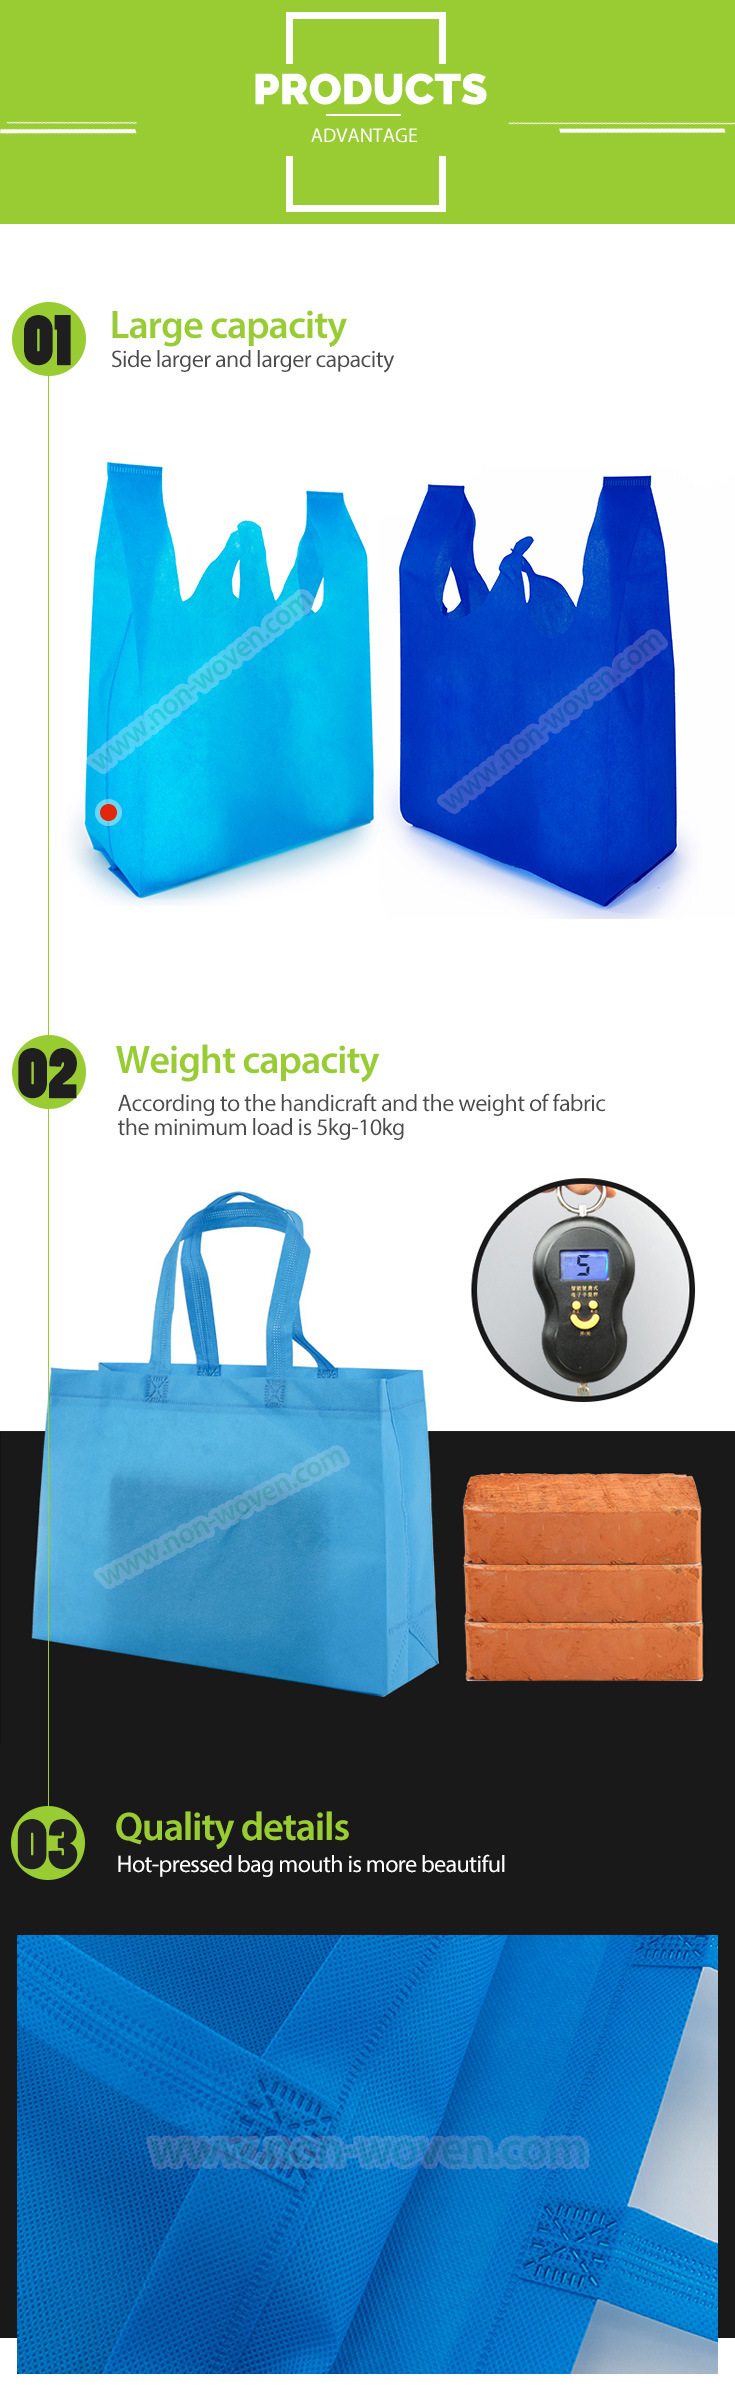 Non Woven Bag, Tote Bag, Biodegradable Bag, Shopping Bag, Souvenir Bags,Reusable Shopping Bag,Eco Bag,Drawstring Bag,PP Bag,Recycle Bag,Reusable Bag,Grocery Bag